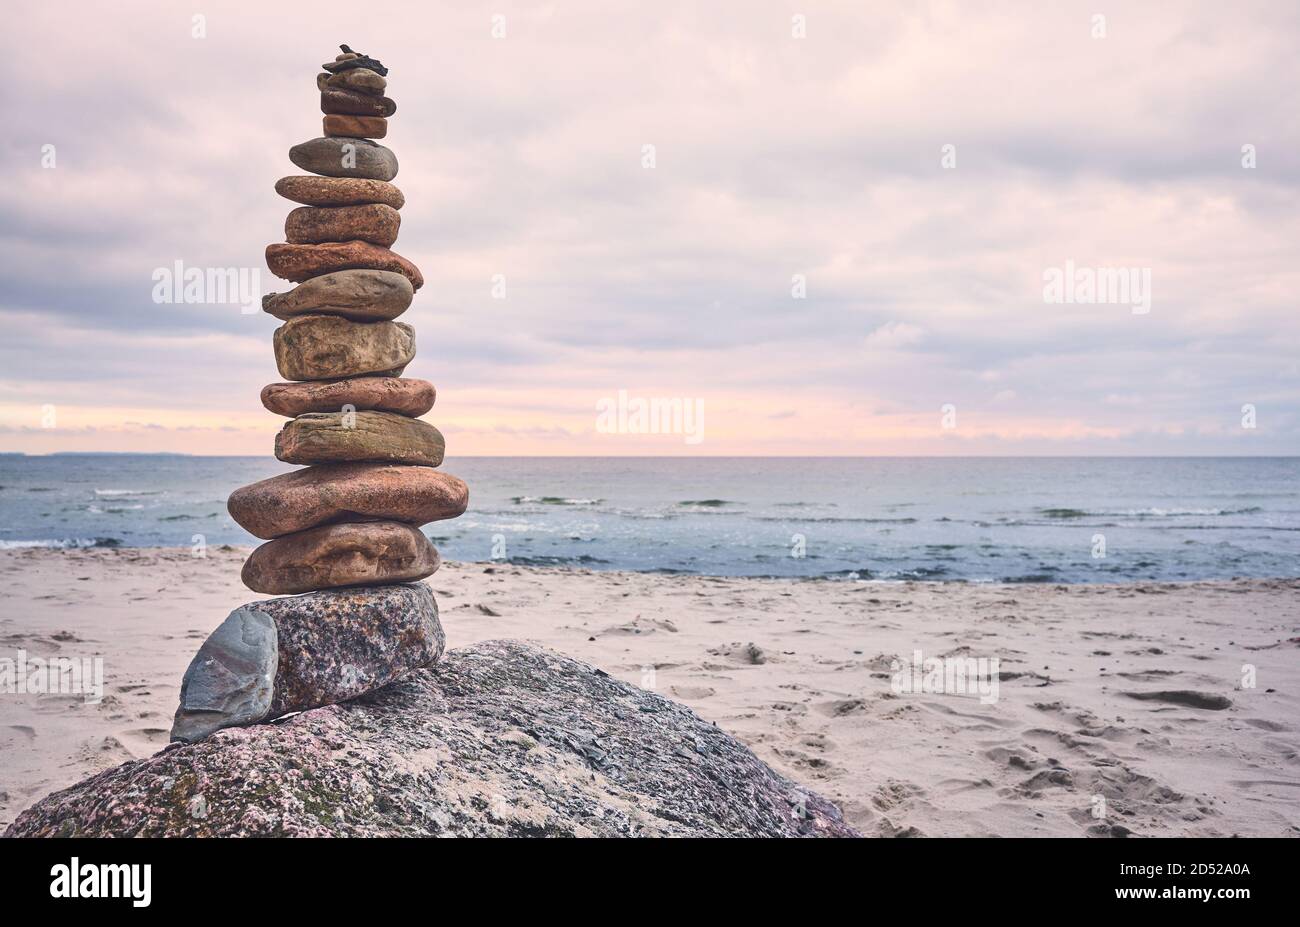 Pyramide de pierre sur une plage, zen, harmonie et équilibre concept, couleurs appliquées. Banque D'Images